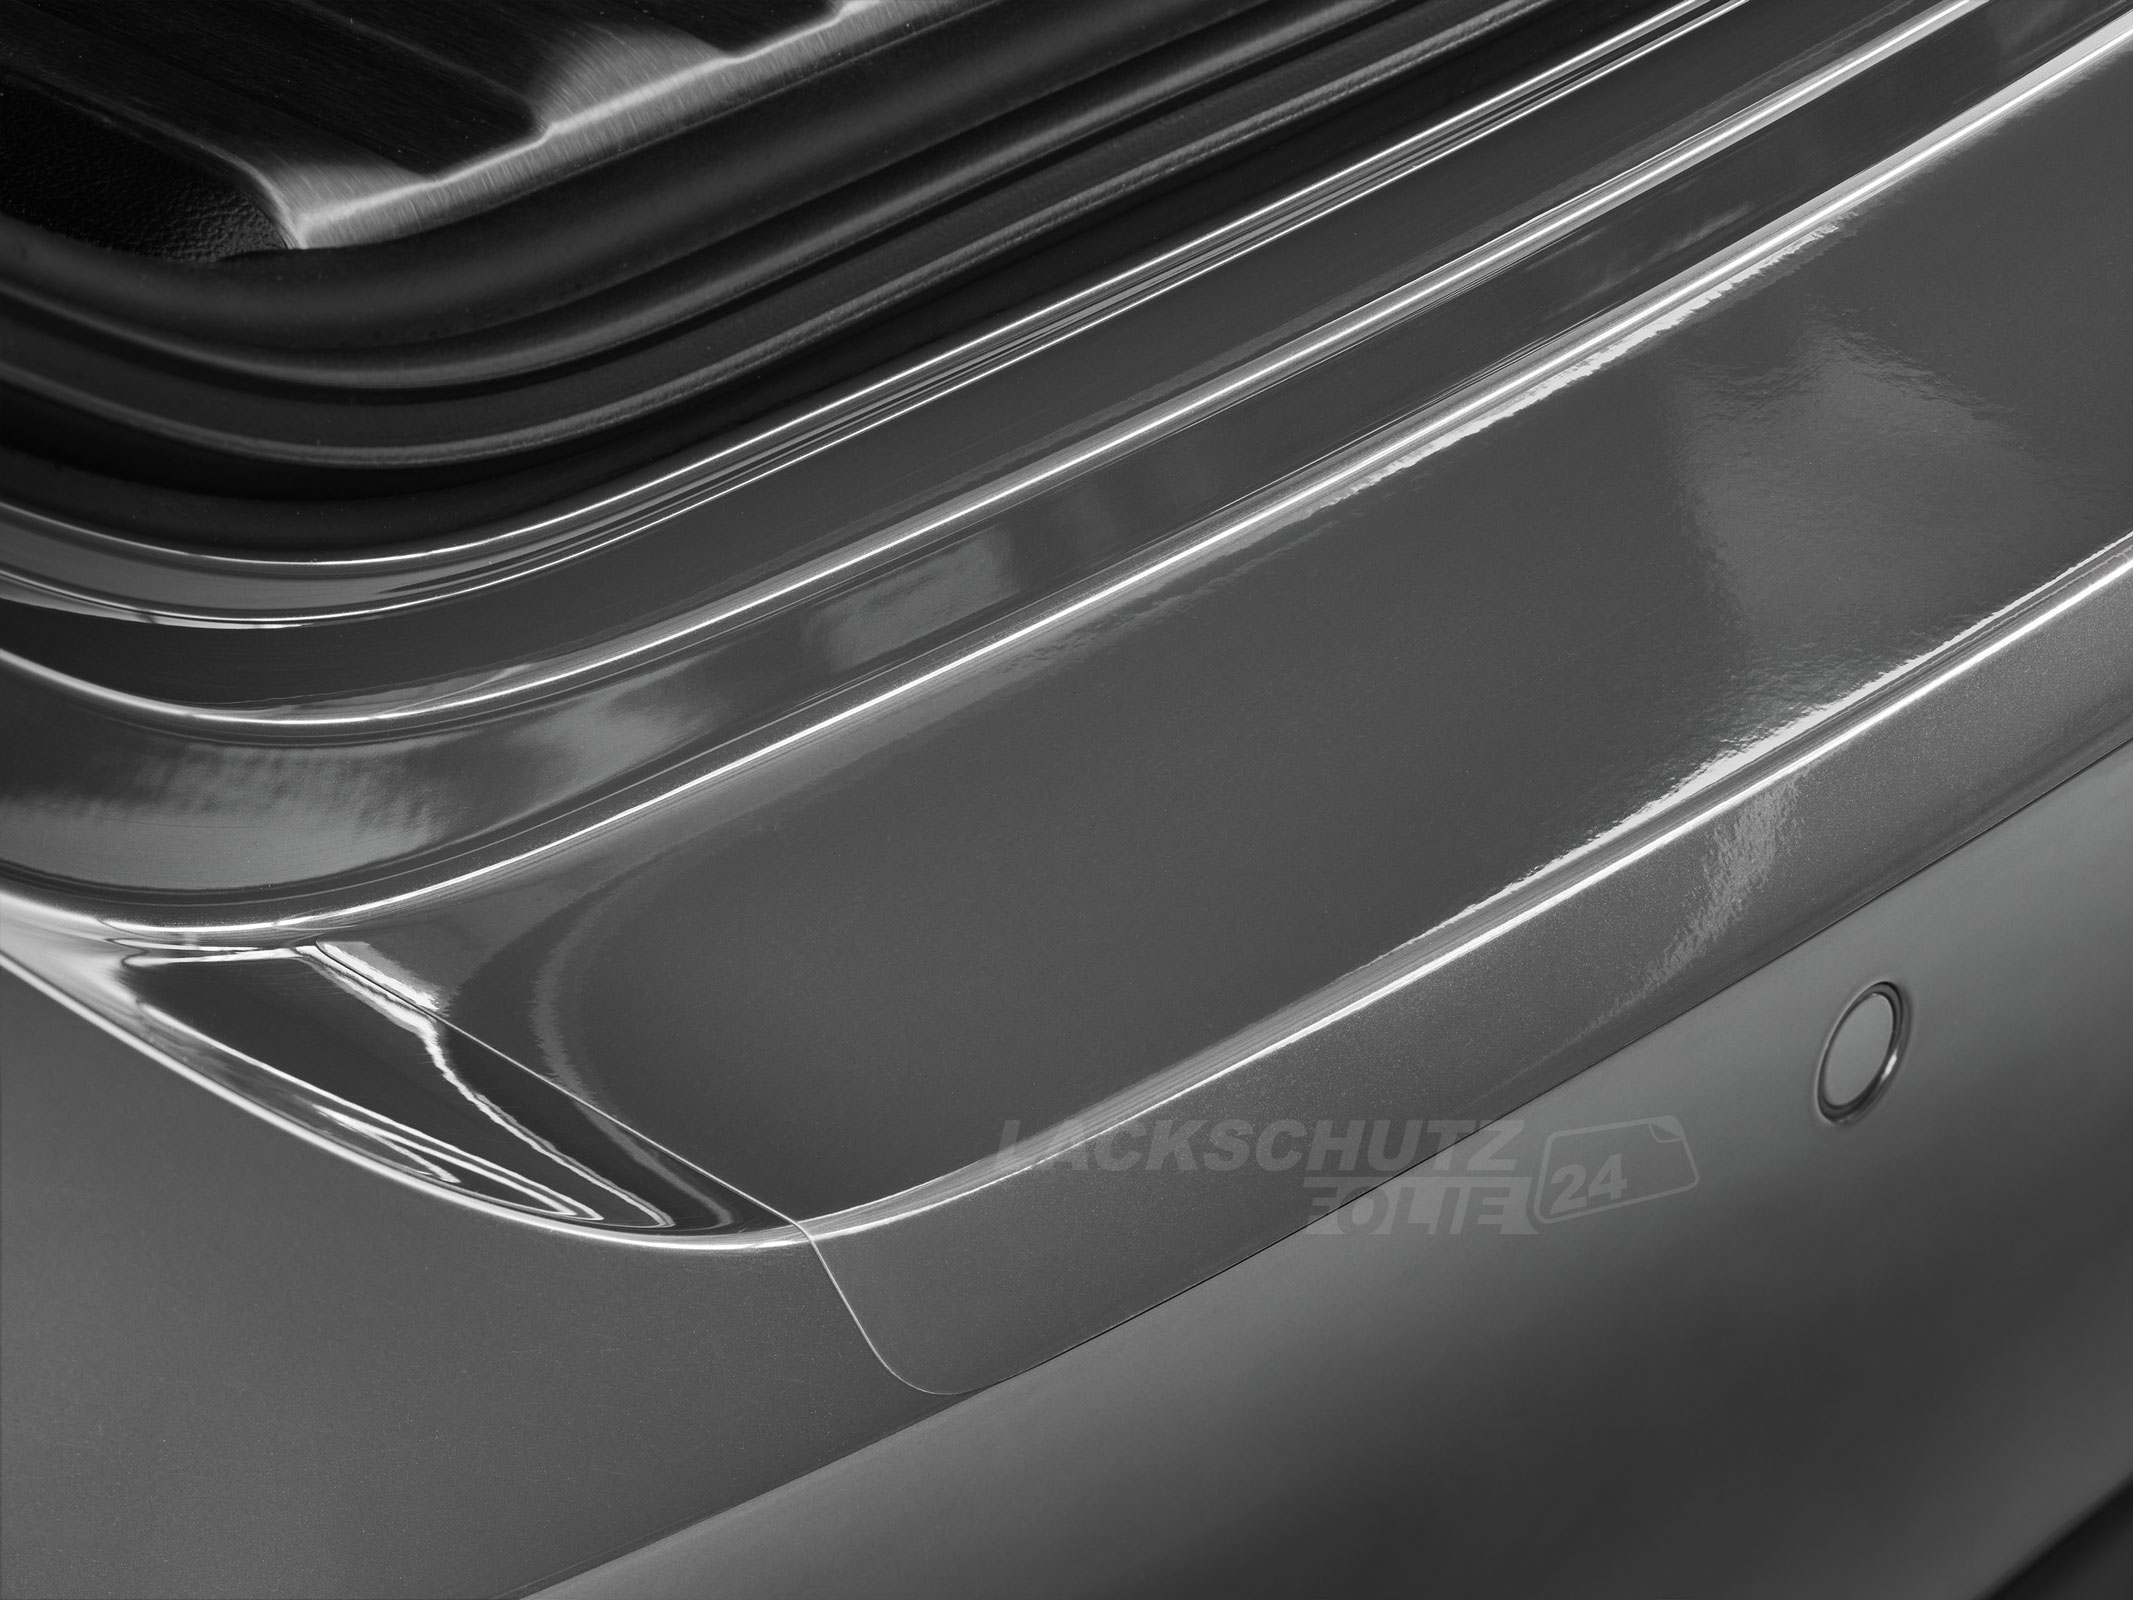 Ladekantenschutzfolie - Transparent Glatt Hochglänzend 150 µm stark für Suzuki SX4 S-Cross ab BJ 2013 + Facelift